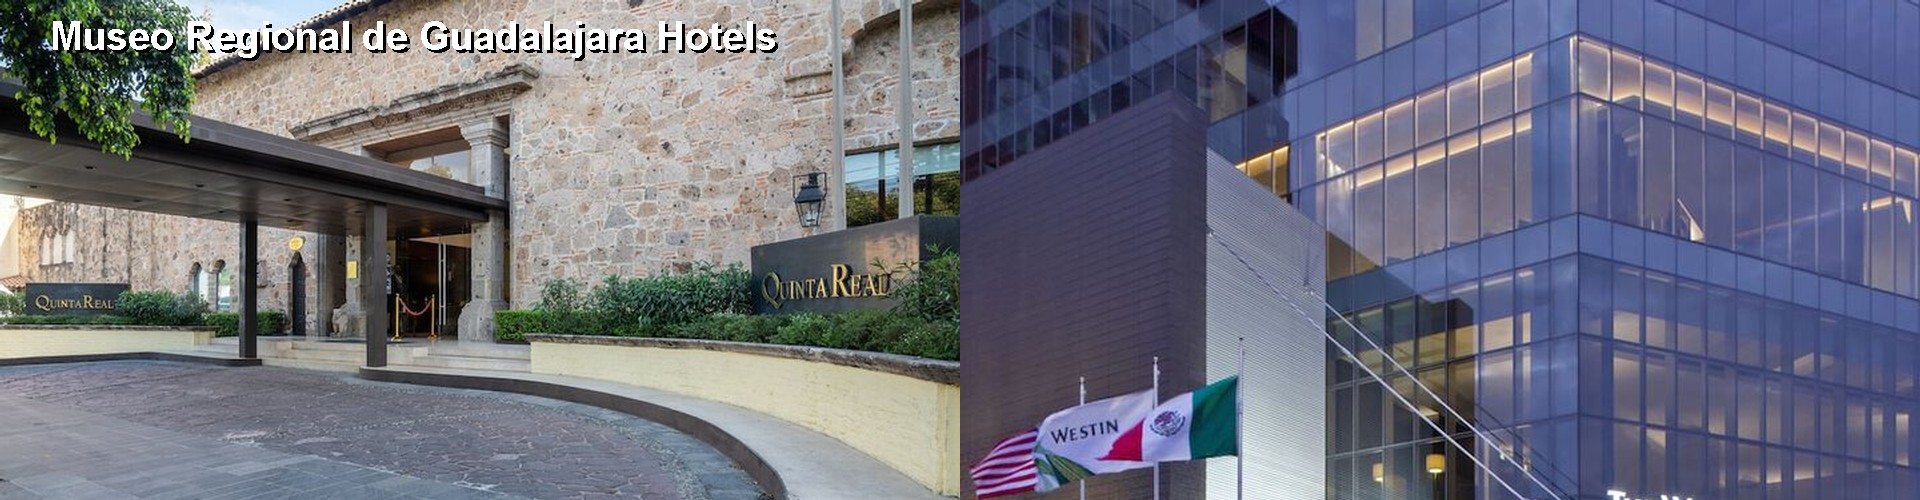 5 Best Hotels near Museo Regional de Guadalajara